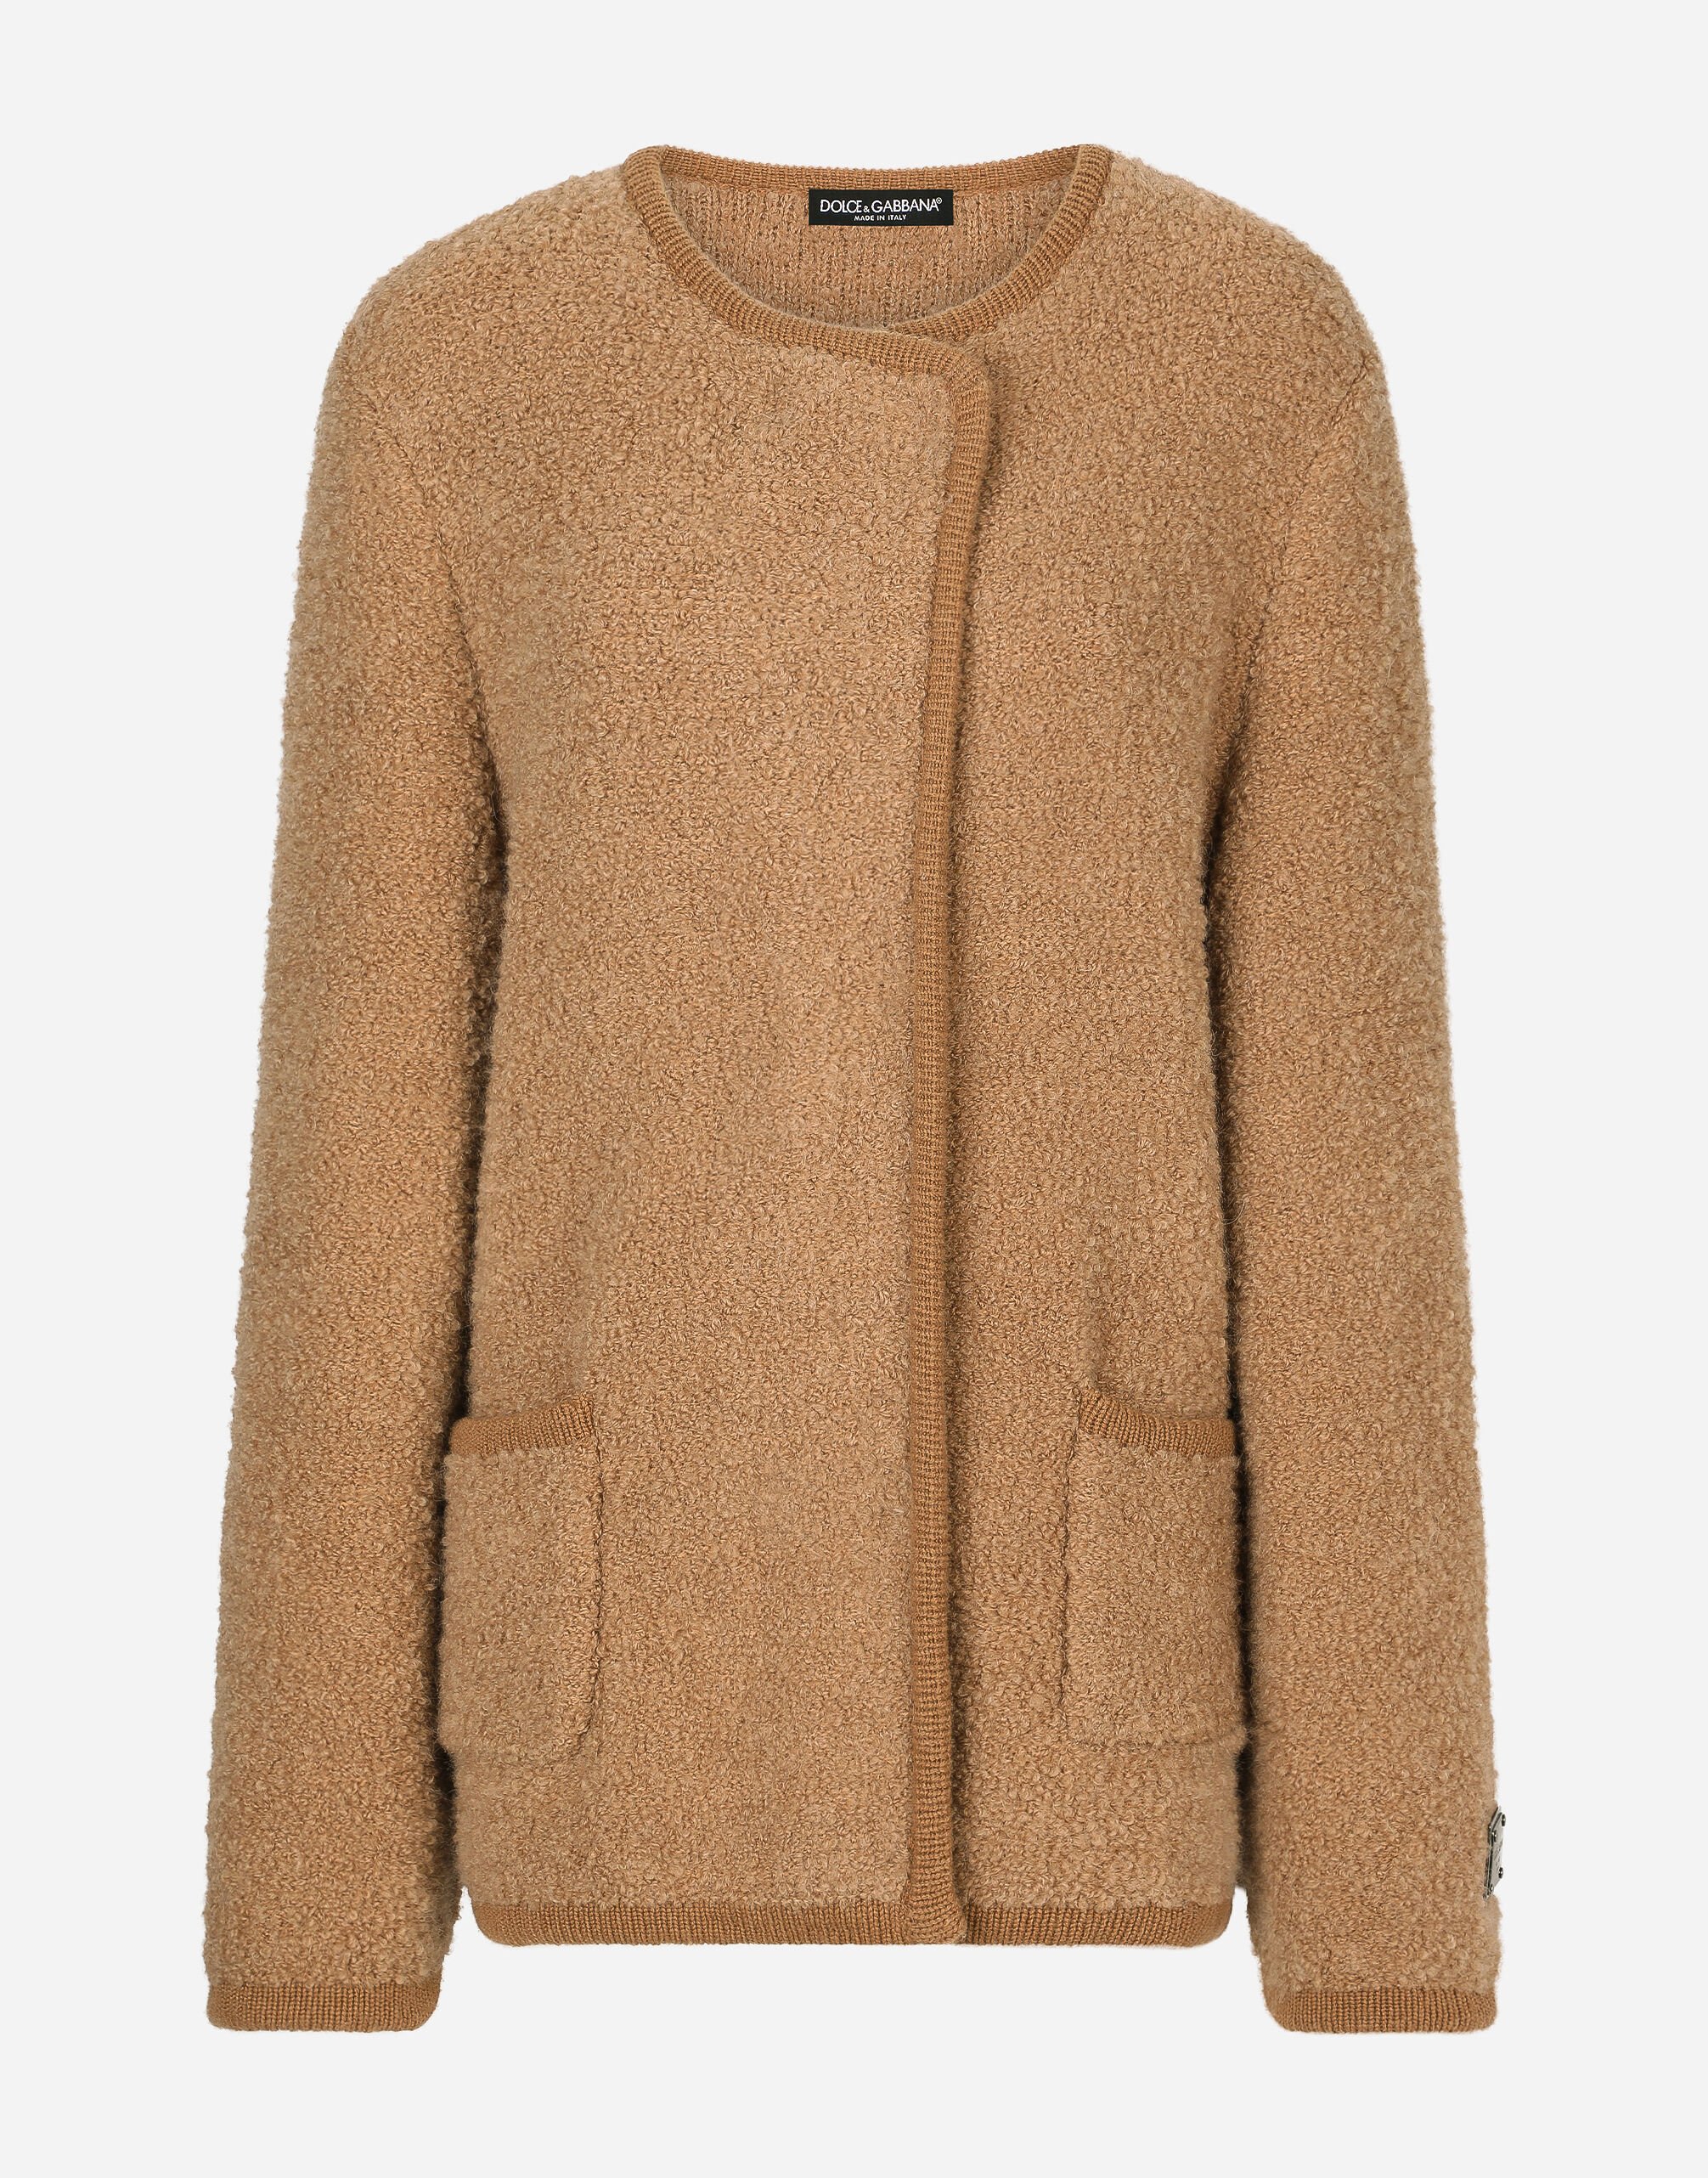 Dolce & Gabbana Giacca doppiopetto in cashmere e lana alpaca Multicolore FXM23TJCVO8